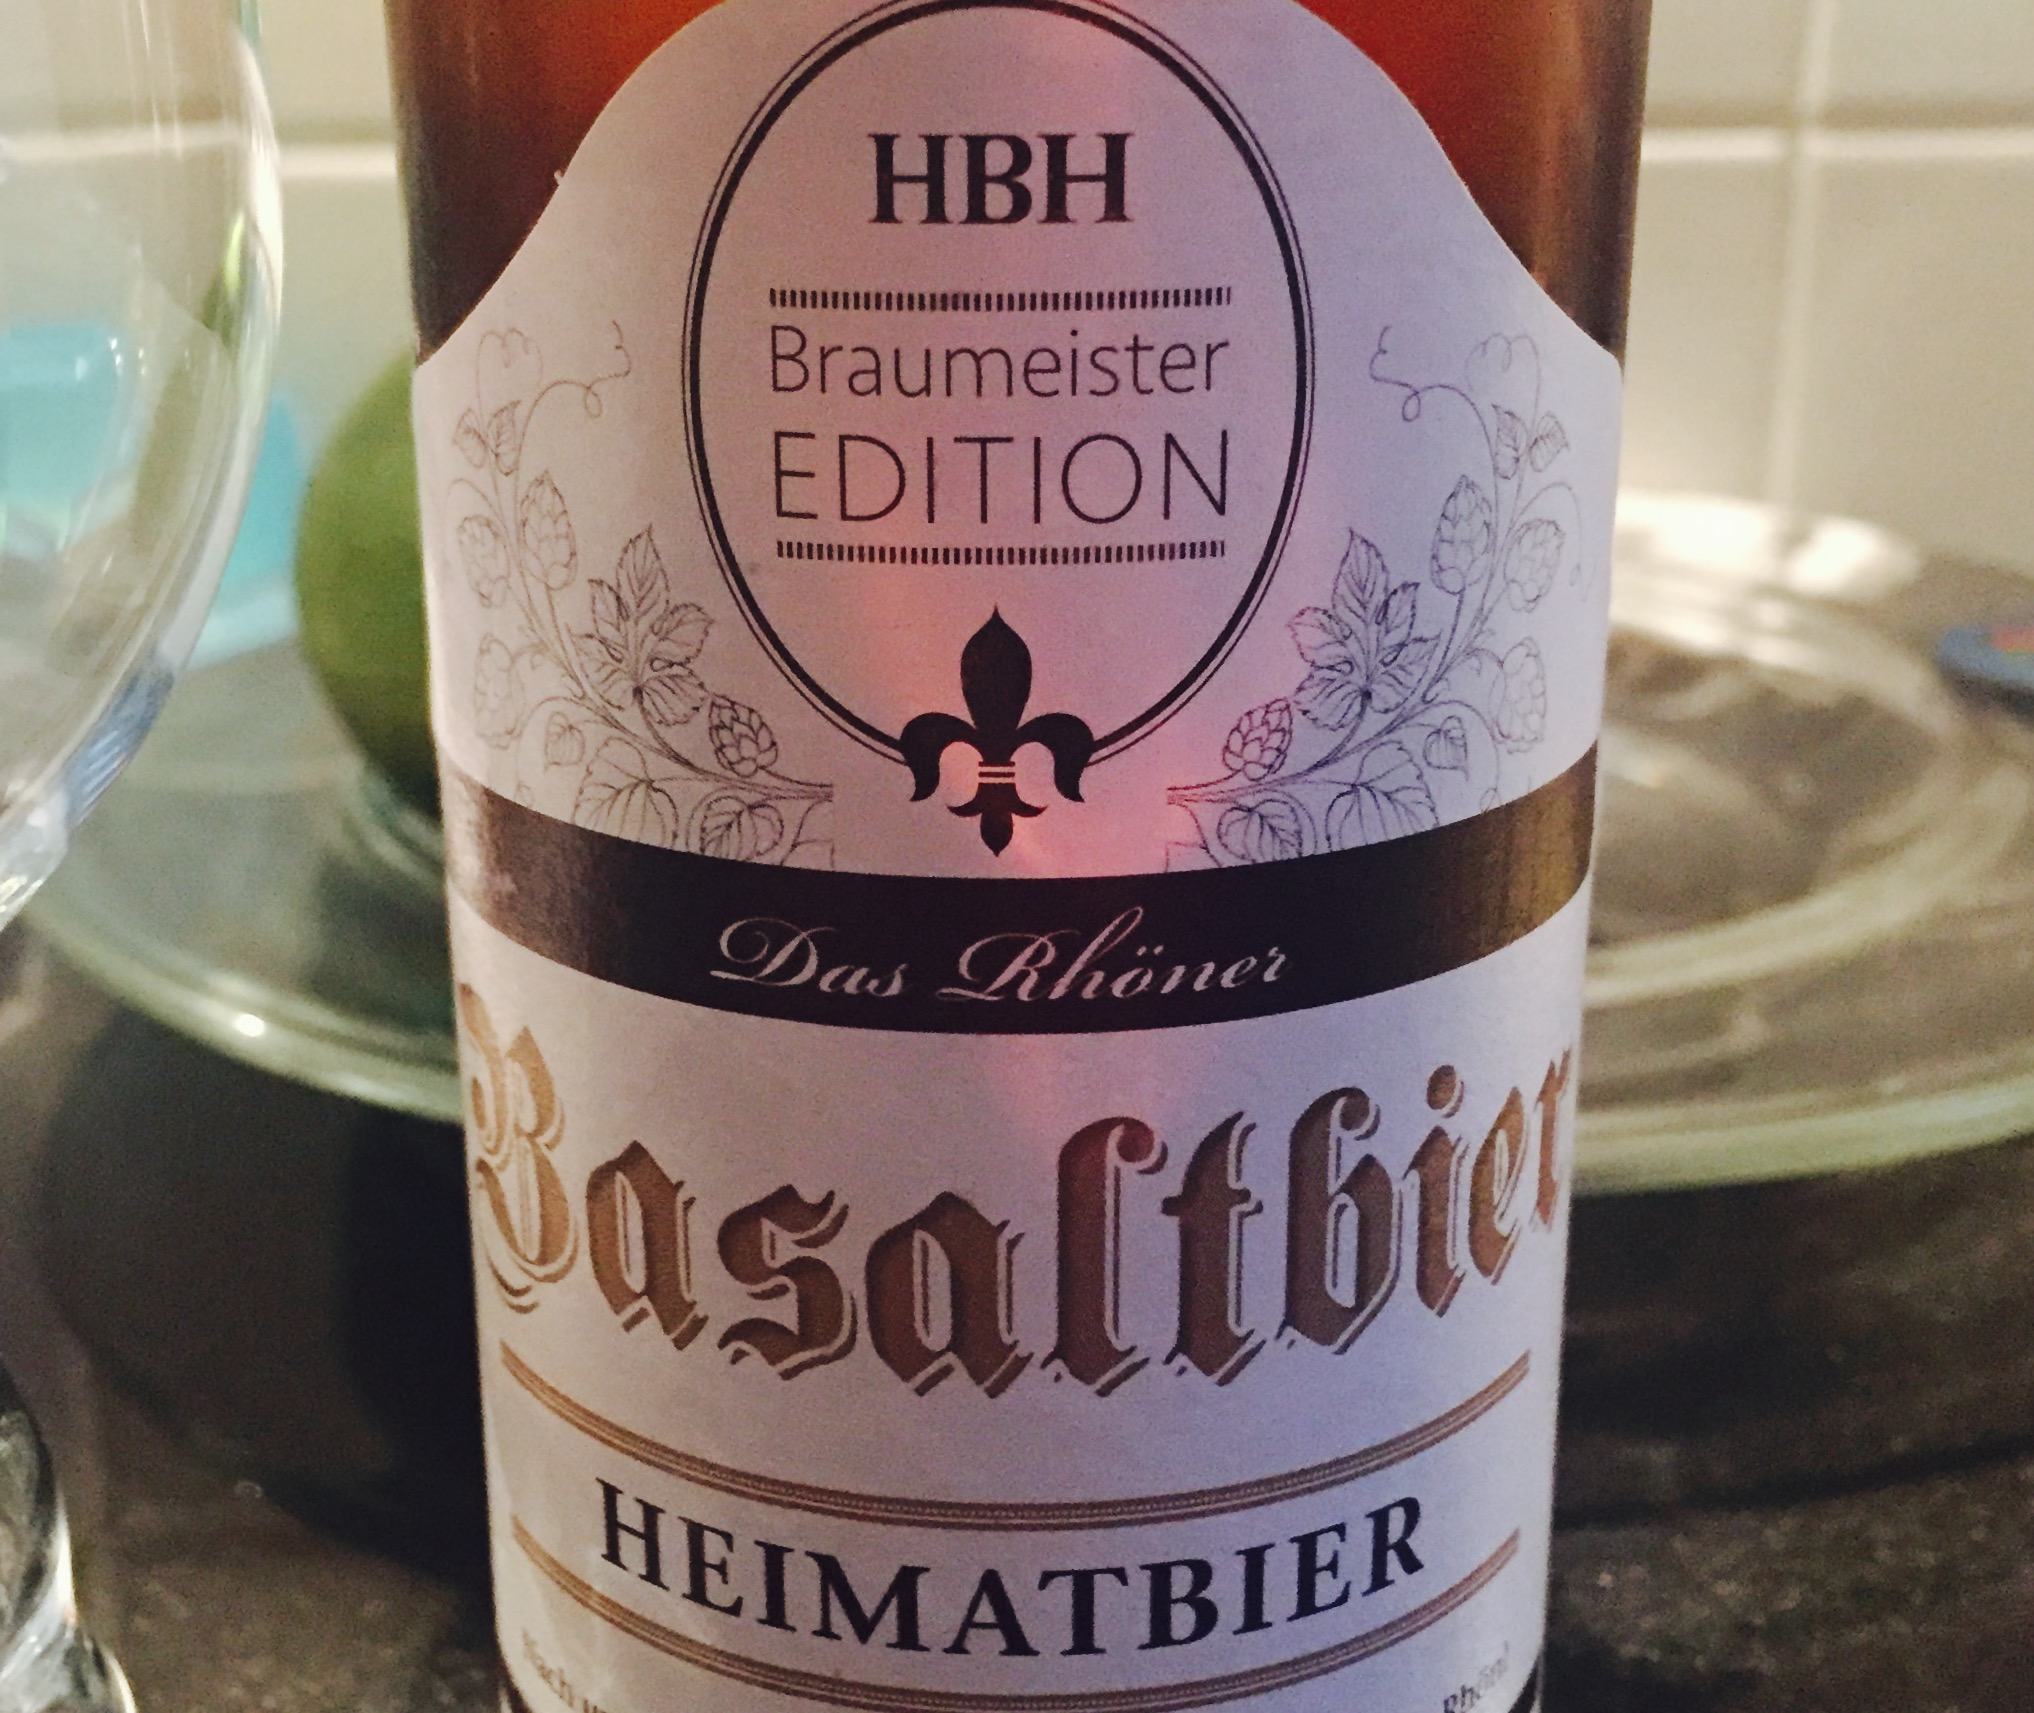 HBH Basaltbier - Heimatbier